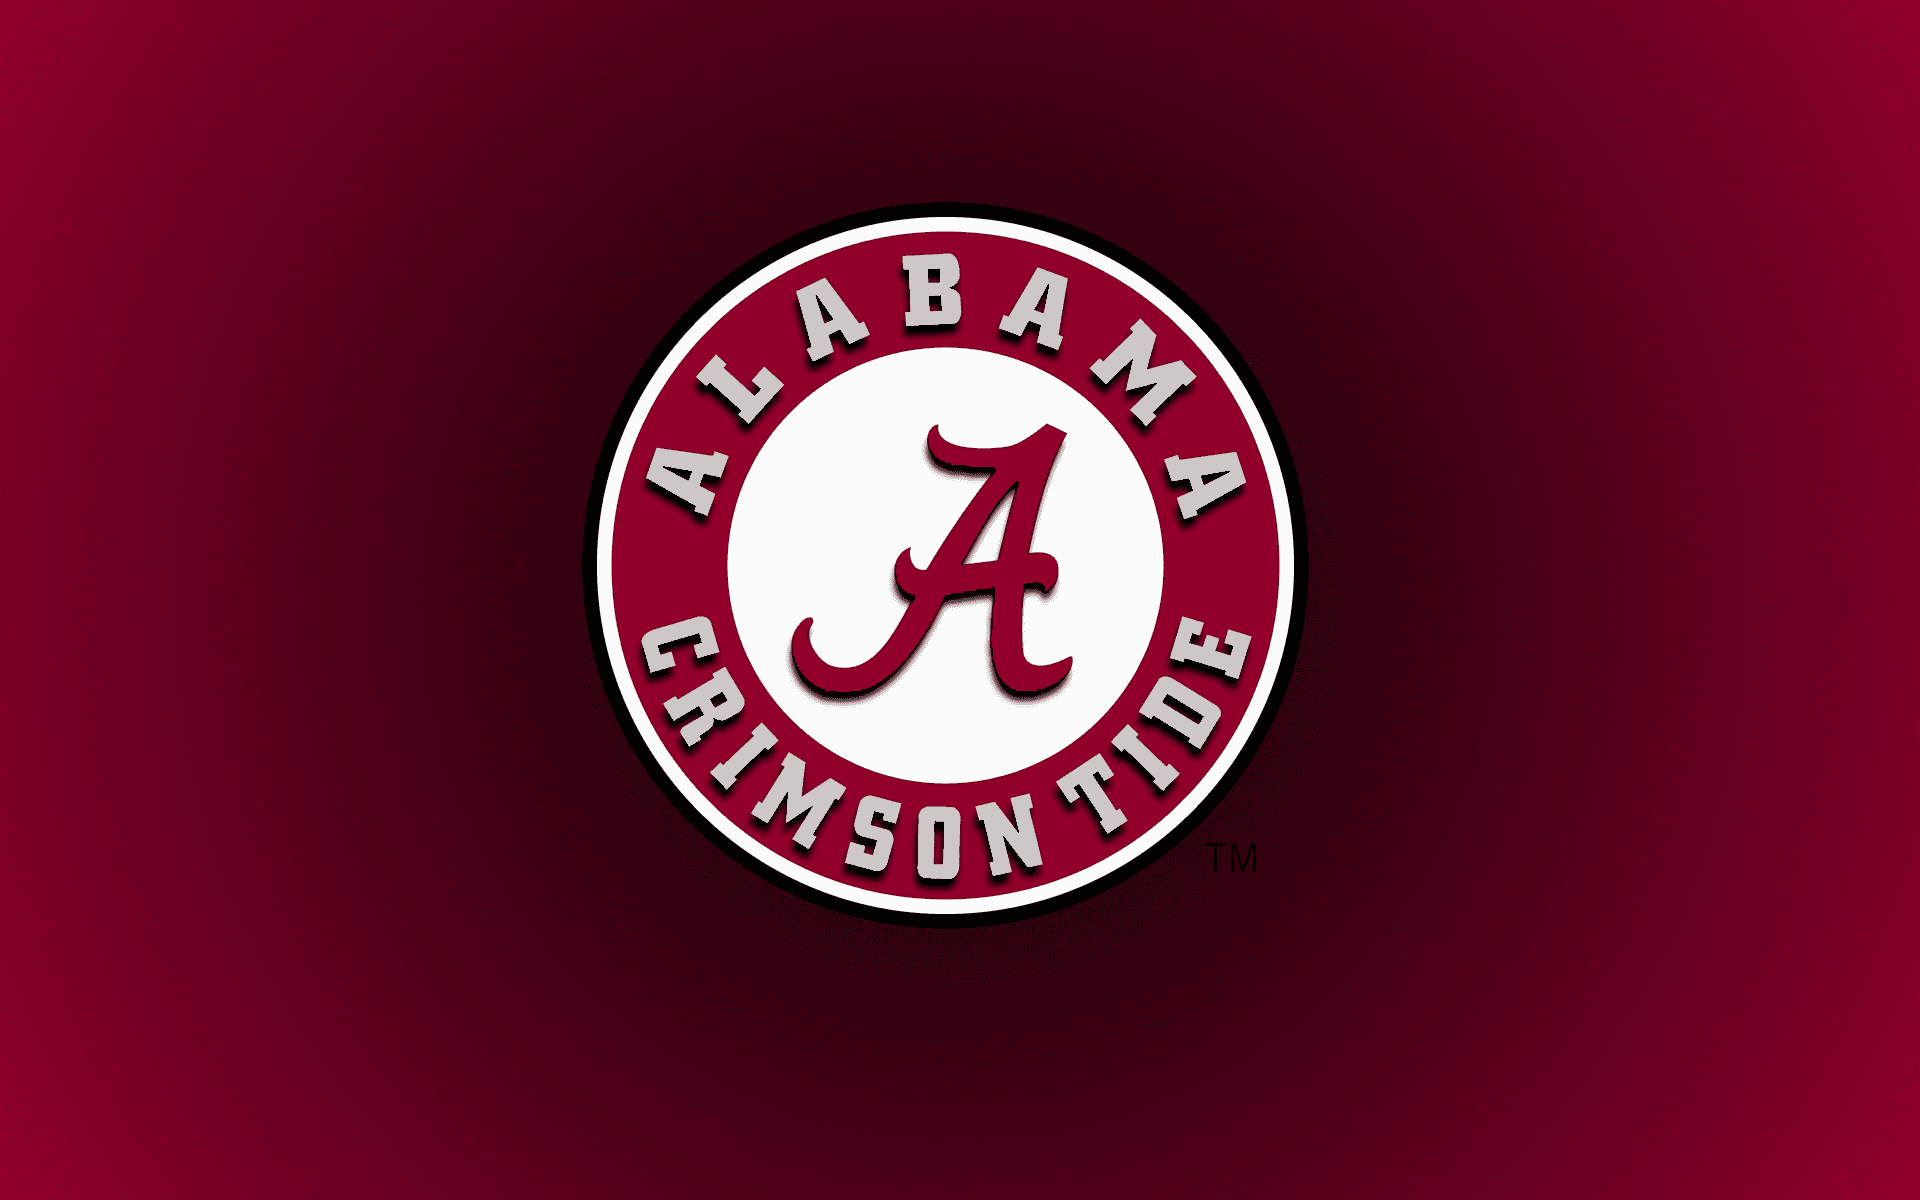 Alabamacrimson Tide Logo På En Rød Baggrund.